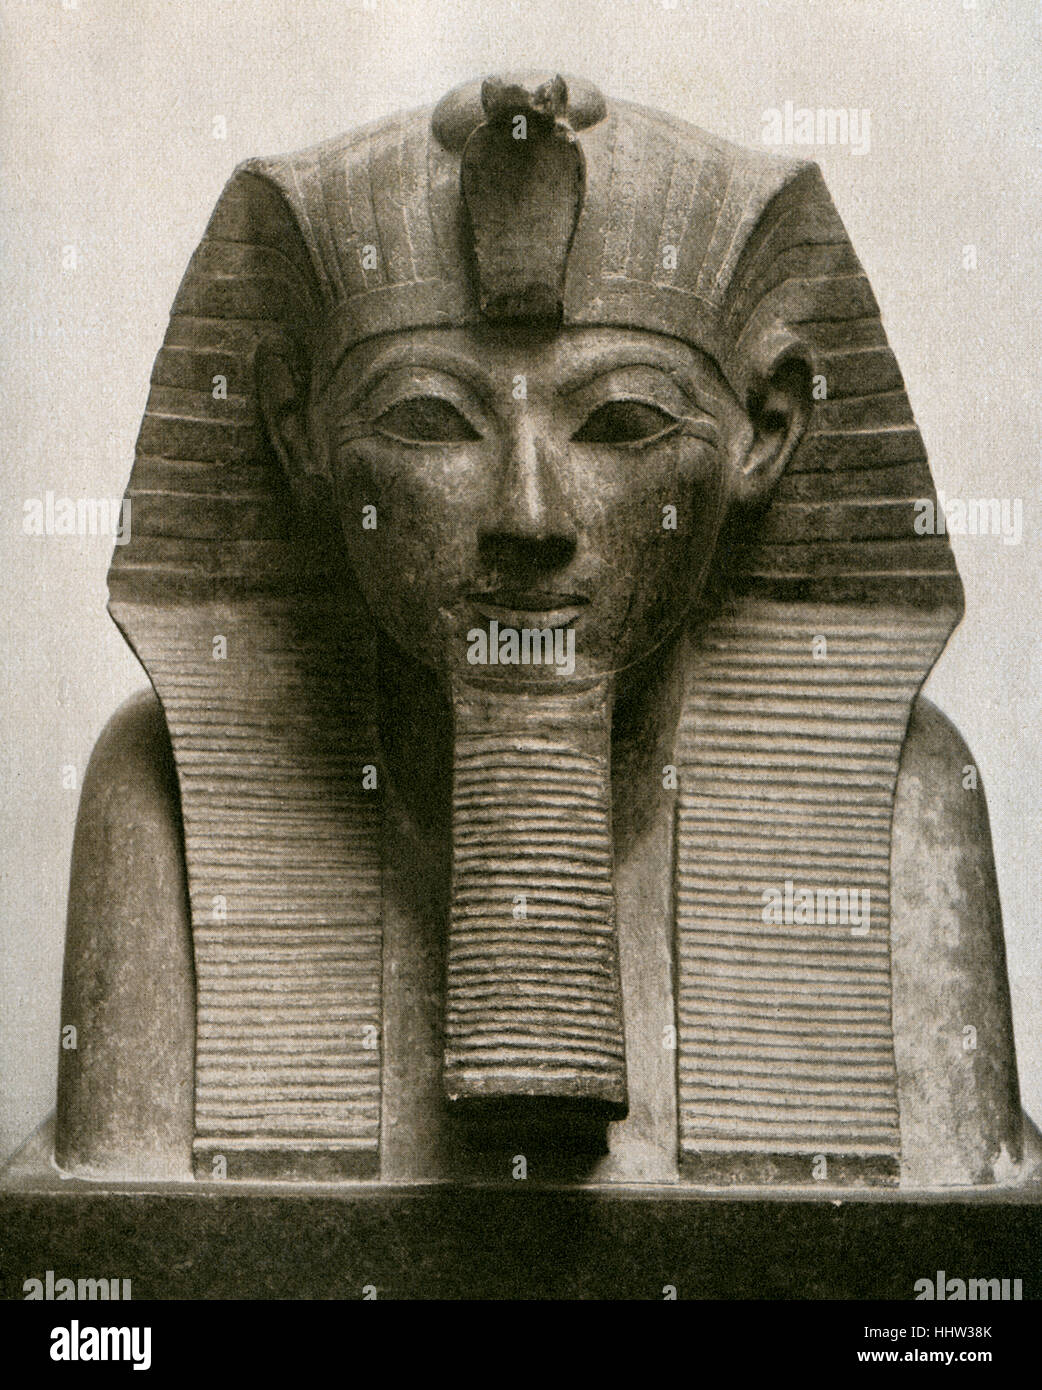 La esfinge de la Reina - Hatsheput. (1507-1458 BC) - Quinto faraón de la decimoctava dinastía de Egipto. El Museo de El Cairo Foto de stock